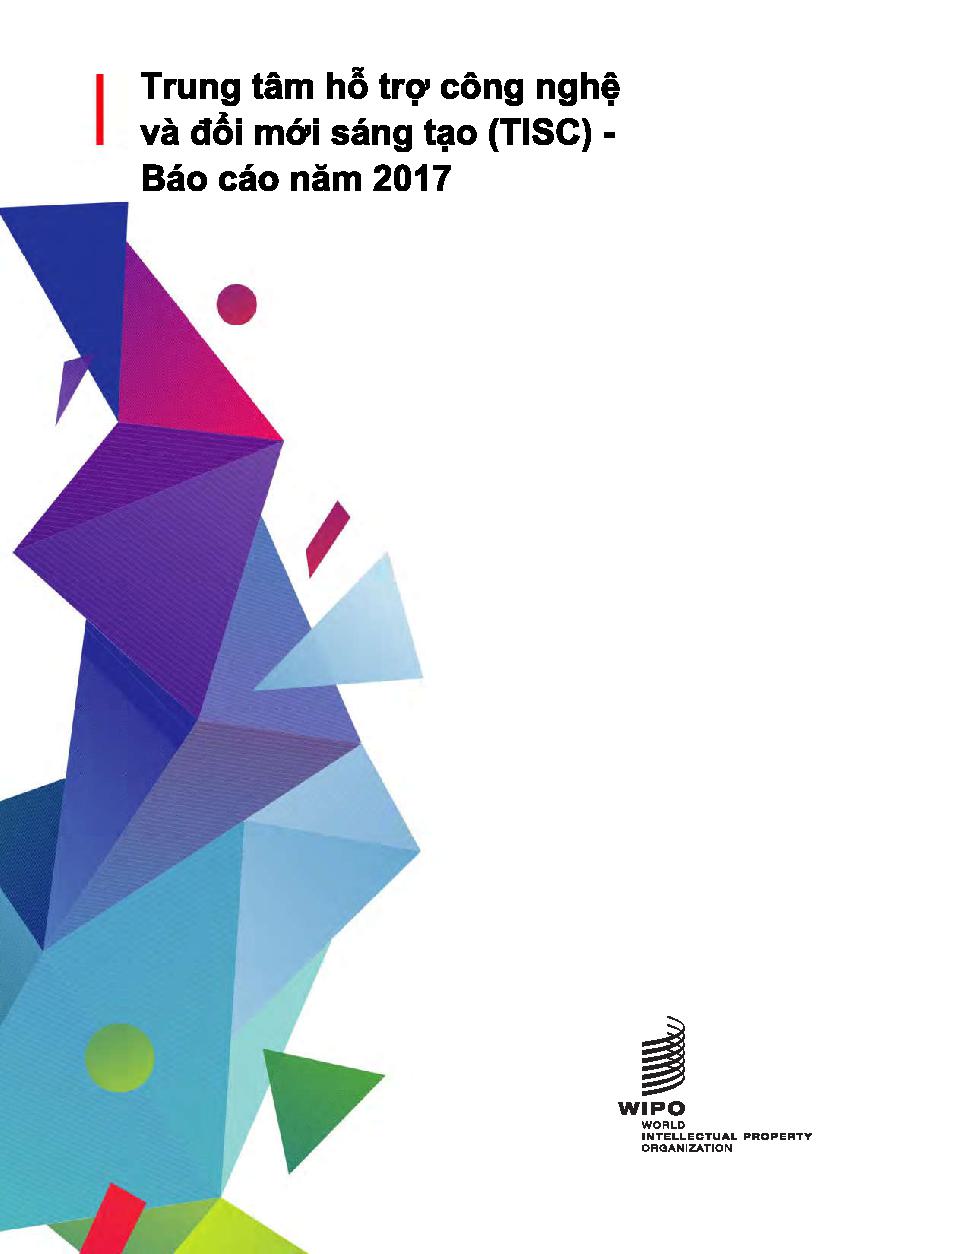 Trung tâm hỗ trợ công nghệ và đổi mới sáng tạo (TISC) Báo cáo năm 2017